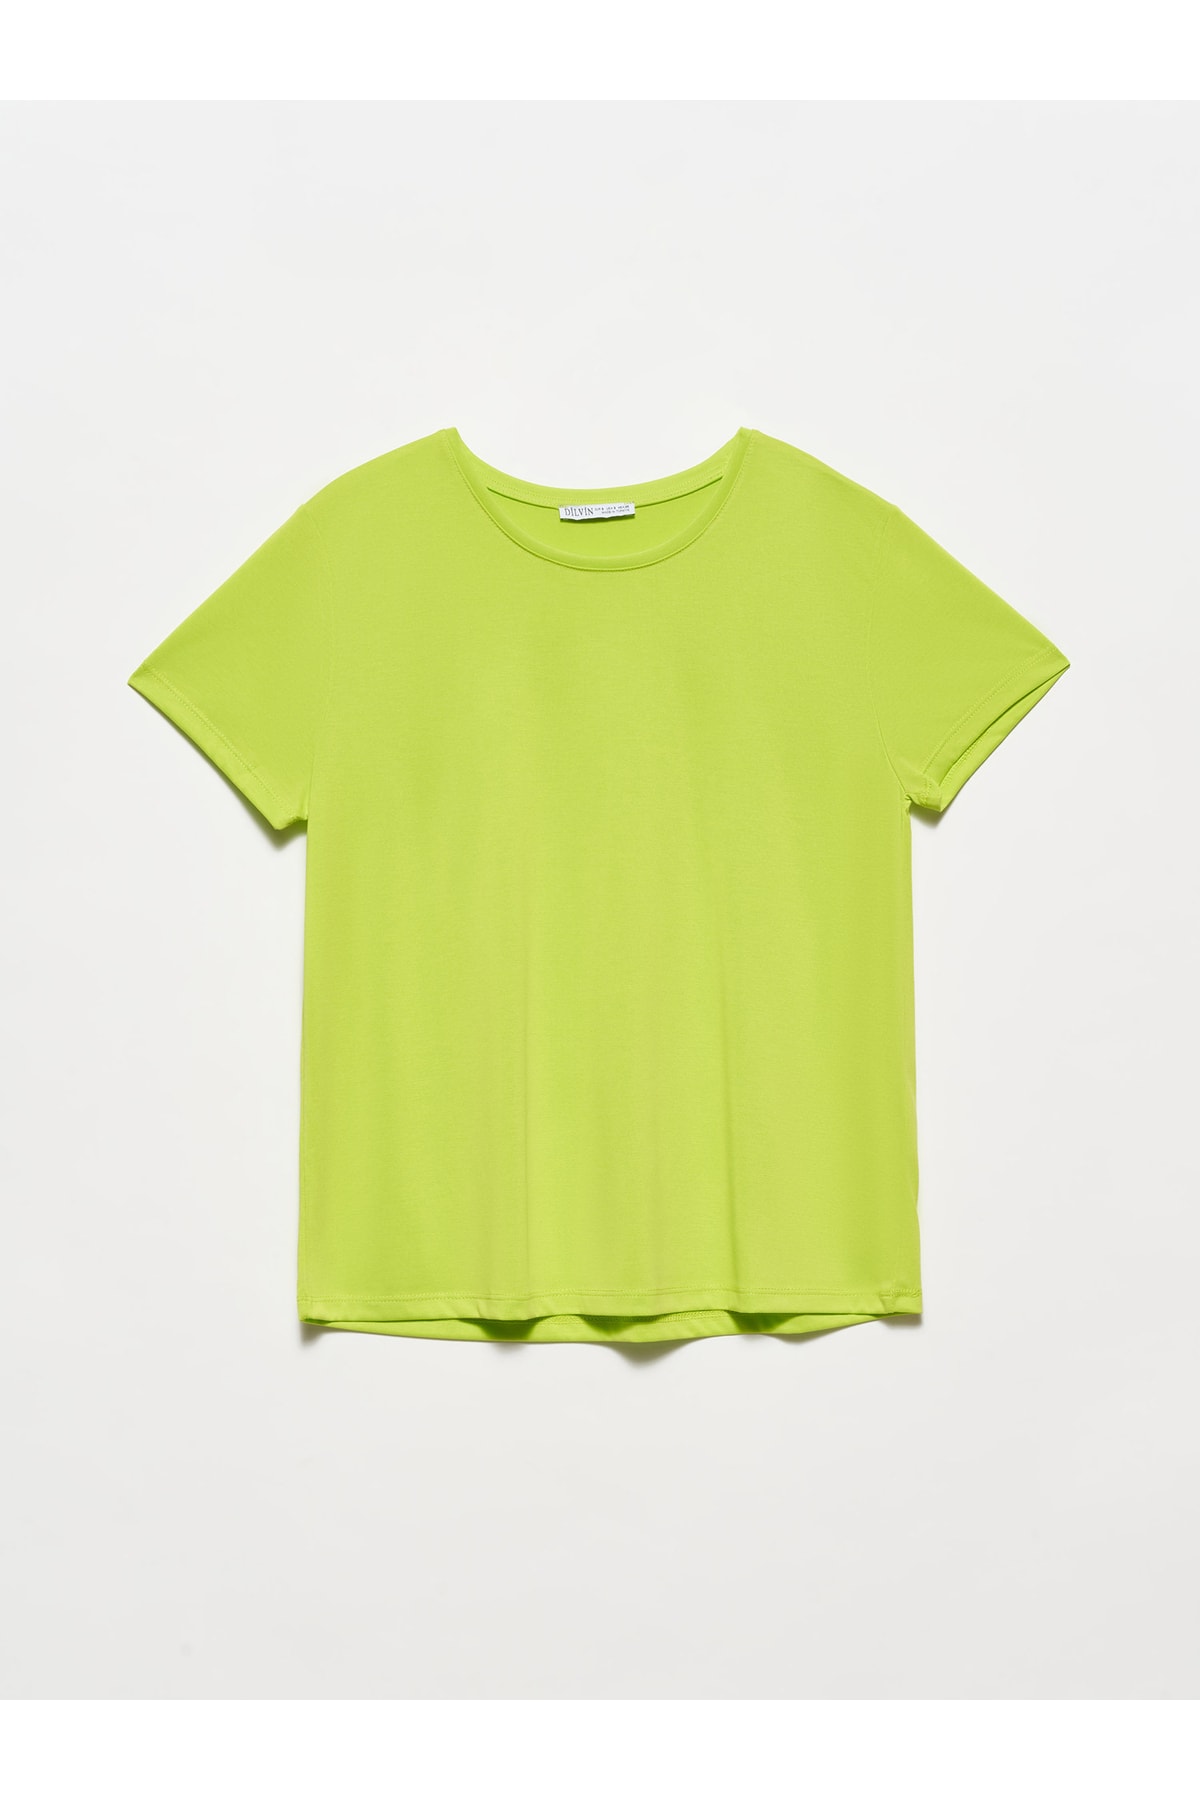 Dilvin T-Shirt Gelb Regular Fit Fast ausverkauft